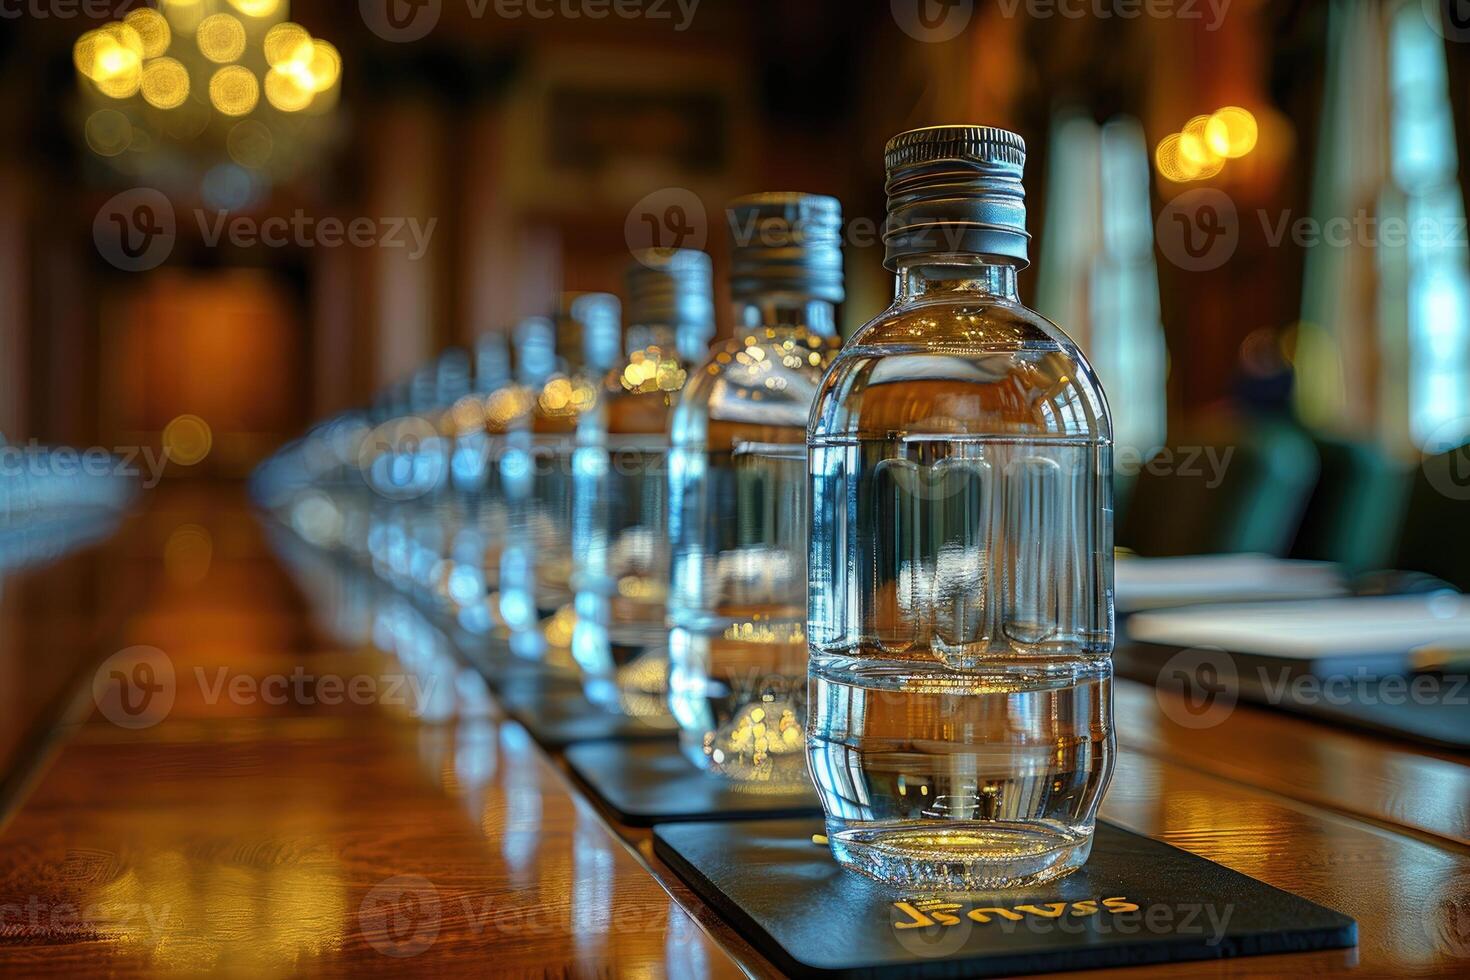 mineral vatten flaskor på de tabell professionell reklam mat fotografi foto